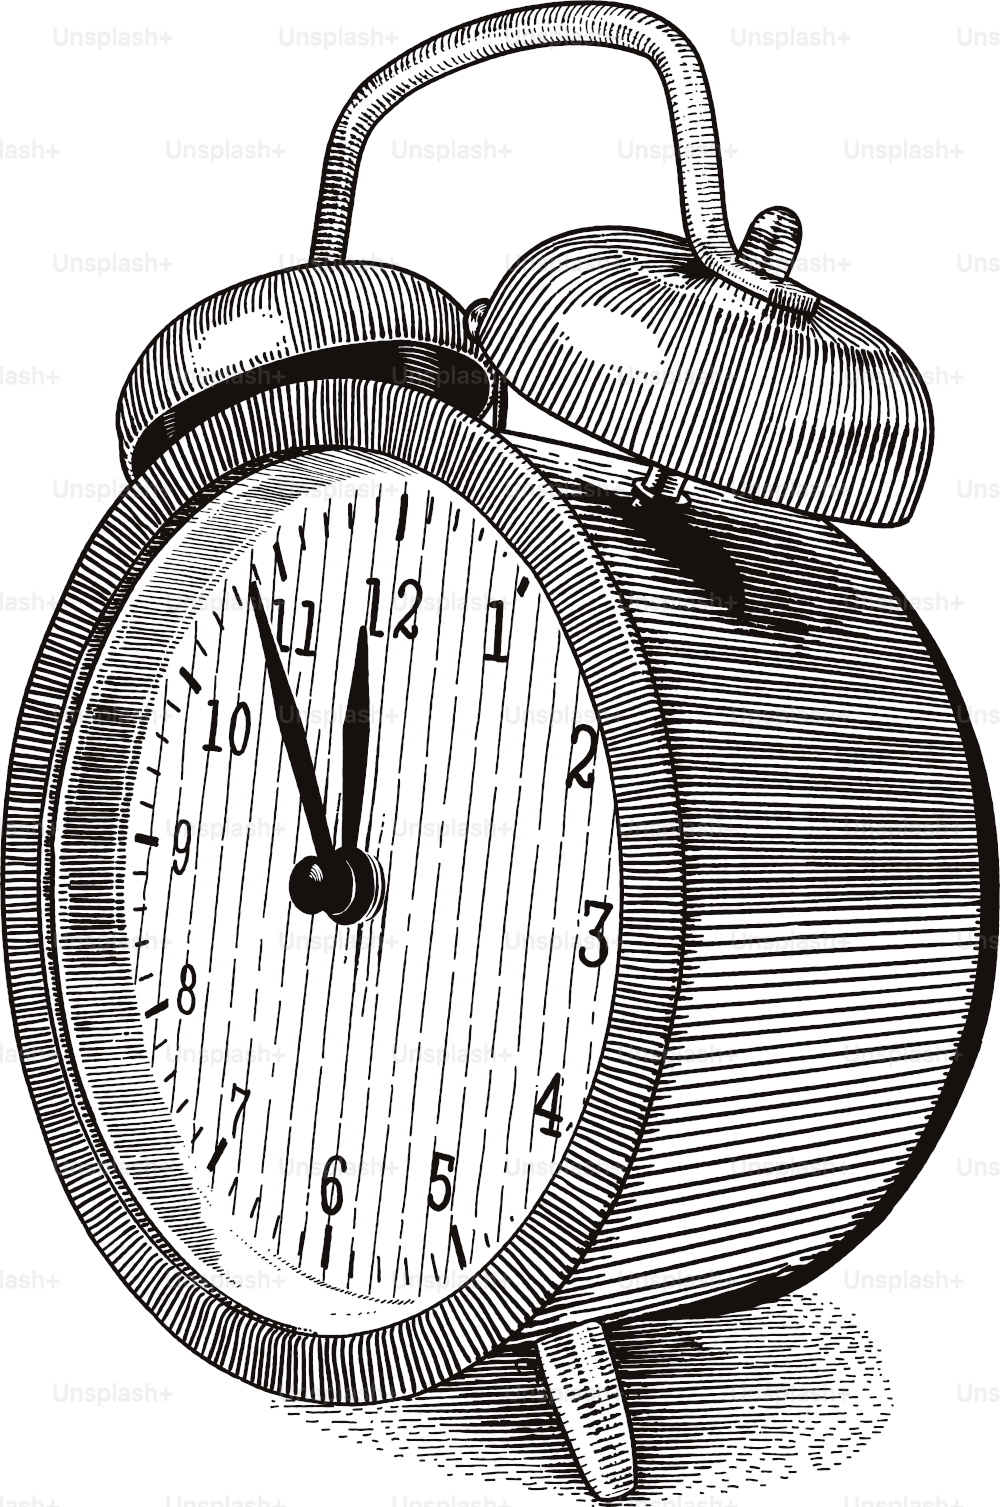 Ilustración de estilo de grabado del reloj despertador de estilo antiguo